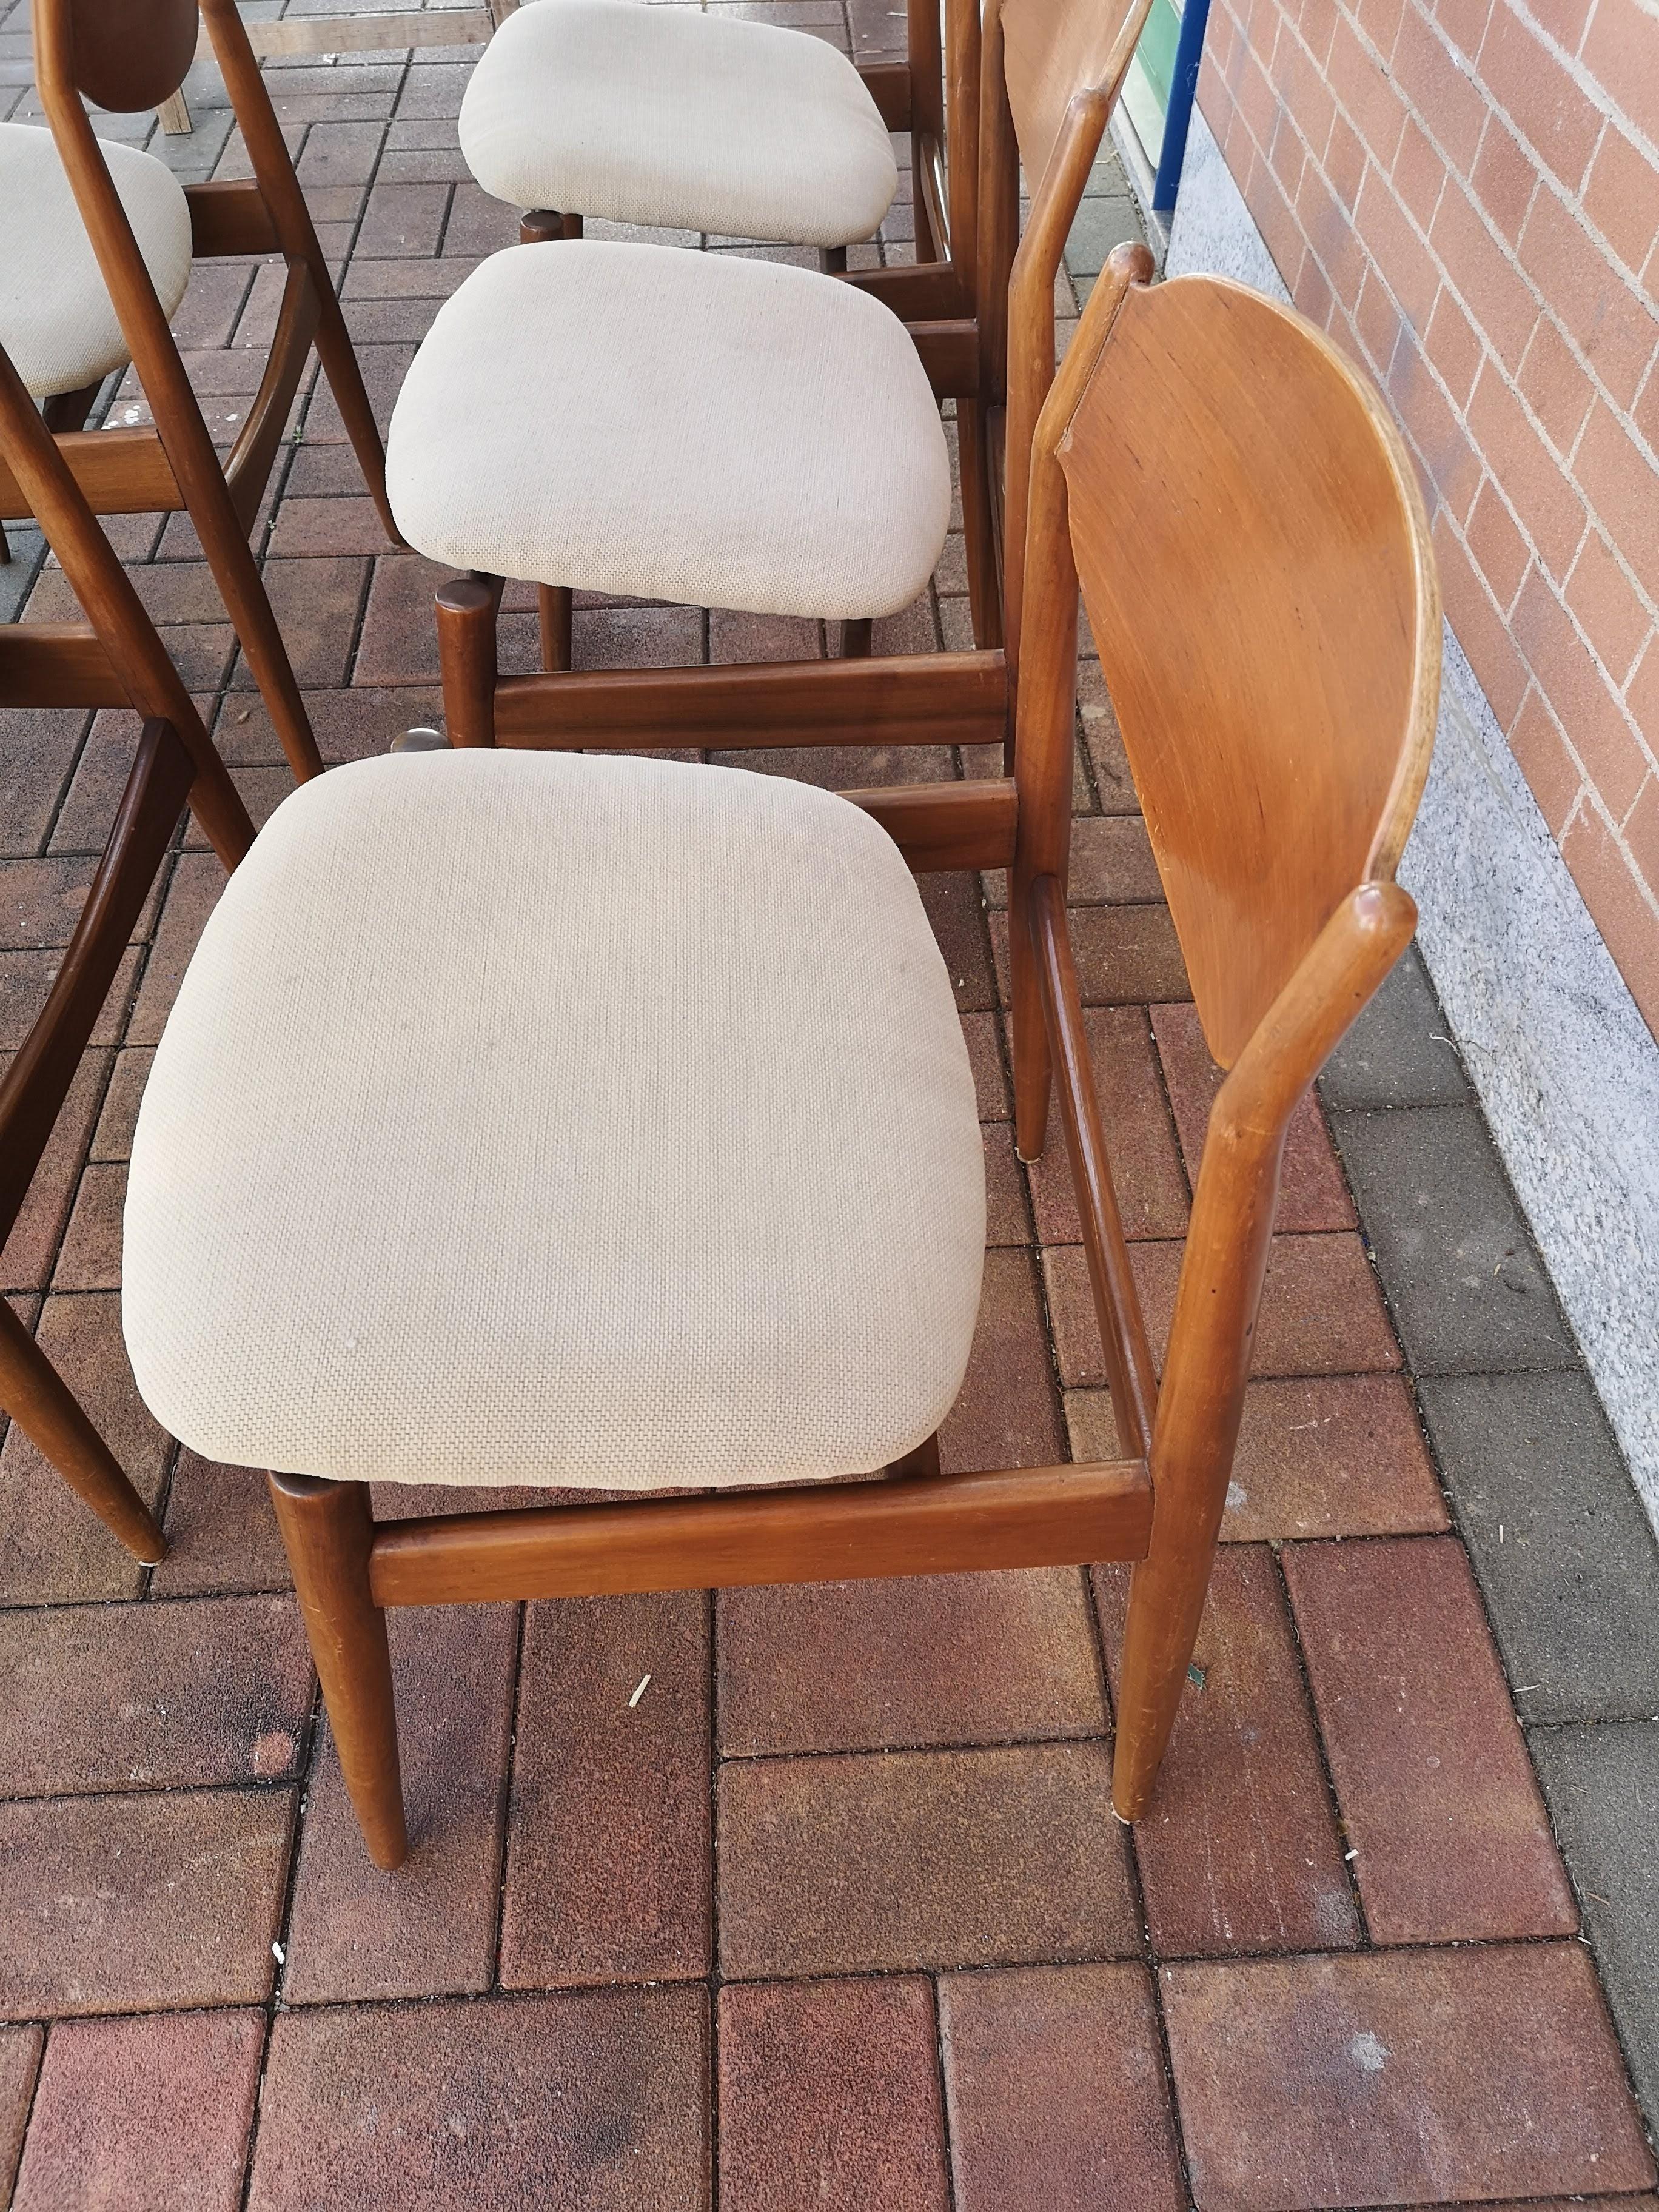 Ensemble de 6 chaises conçues par Leonardo Fiori dans les années 1960 et produites par ISA de Bergame (Italie).

Les 6 chaises sont toutes en très bon état.
Structure en teck et siège en tissu d'origine.

La marque de production est indiquée sous